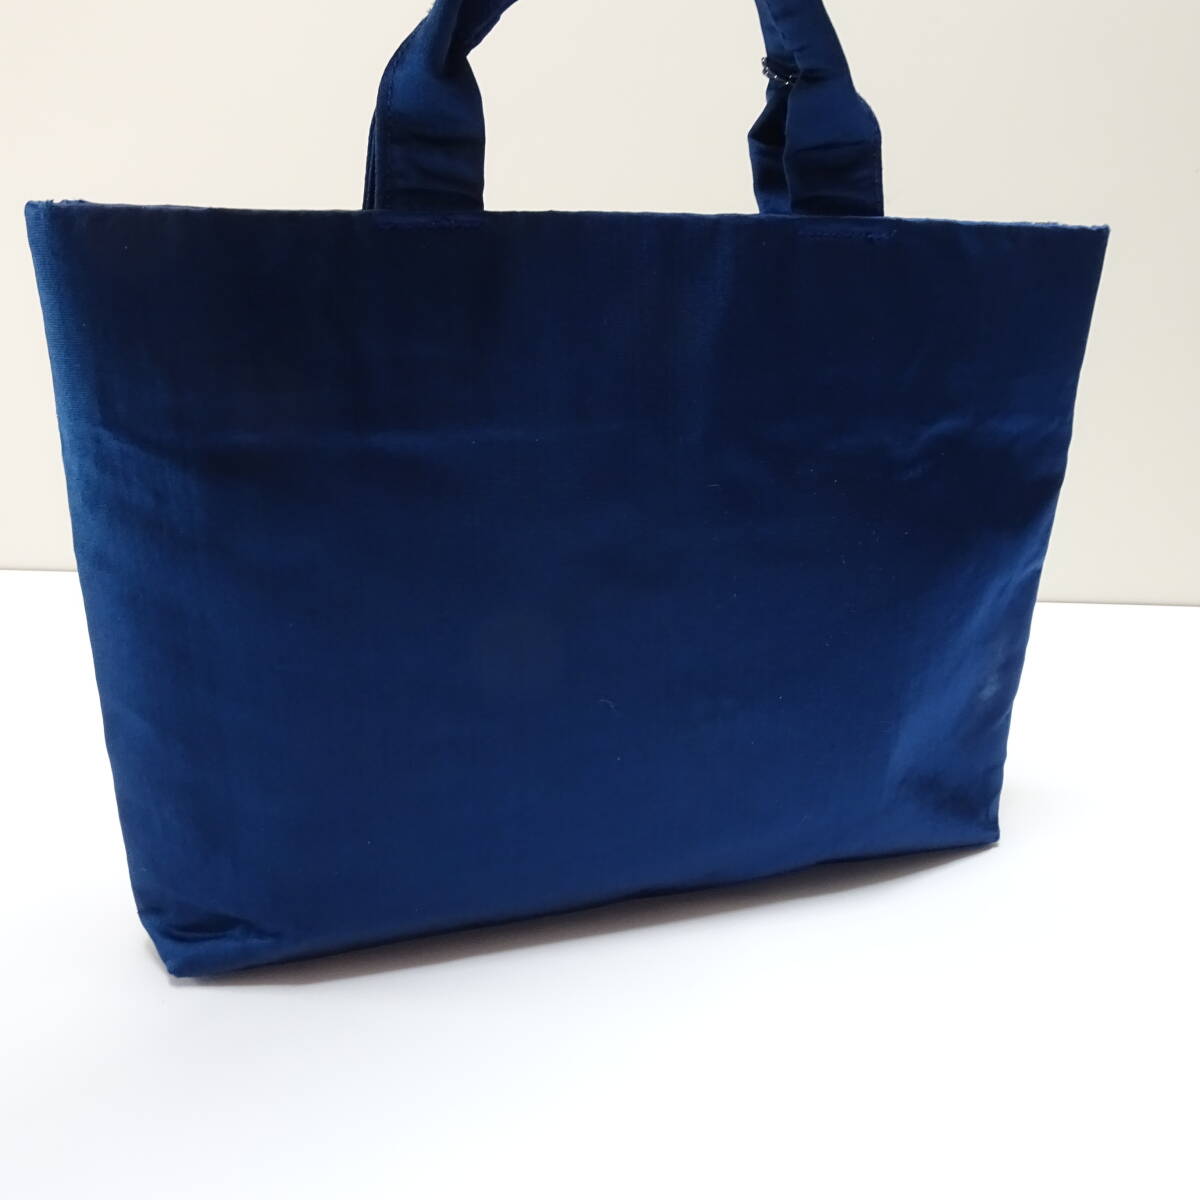  японский костюм сумка для покупок (ta со стартером ) натуральный шелк obi земля выгода для переделка товар 